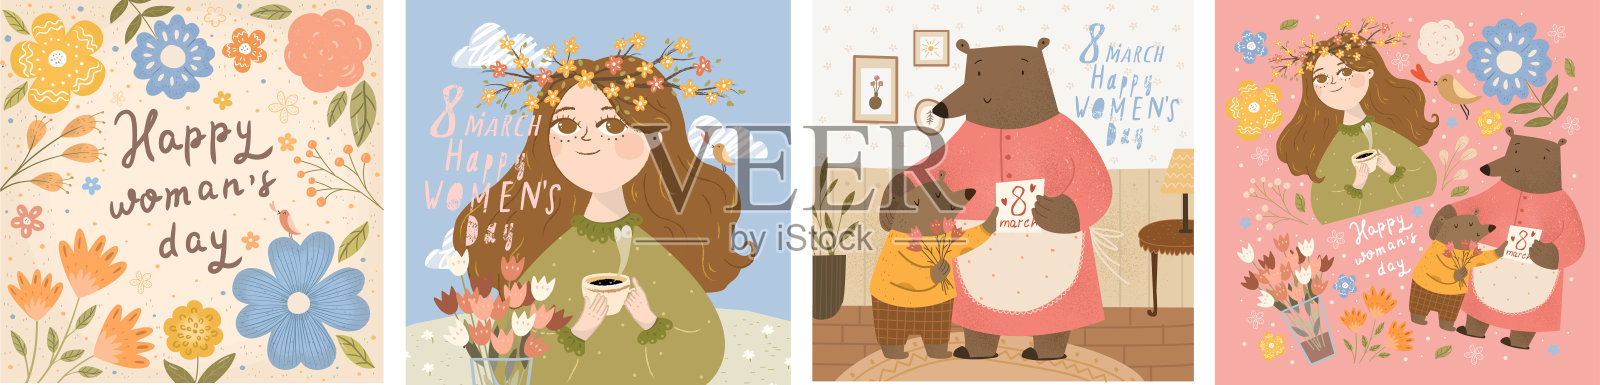 三八妇女节快乐!矢量插图的一个美丽的春天女人，泰迪熊家庭祝贺妈妈的节日和花的框架。卡片或海报的图画。设计模板素材